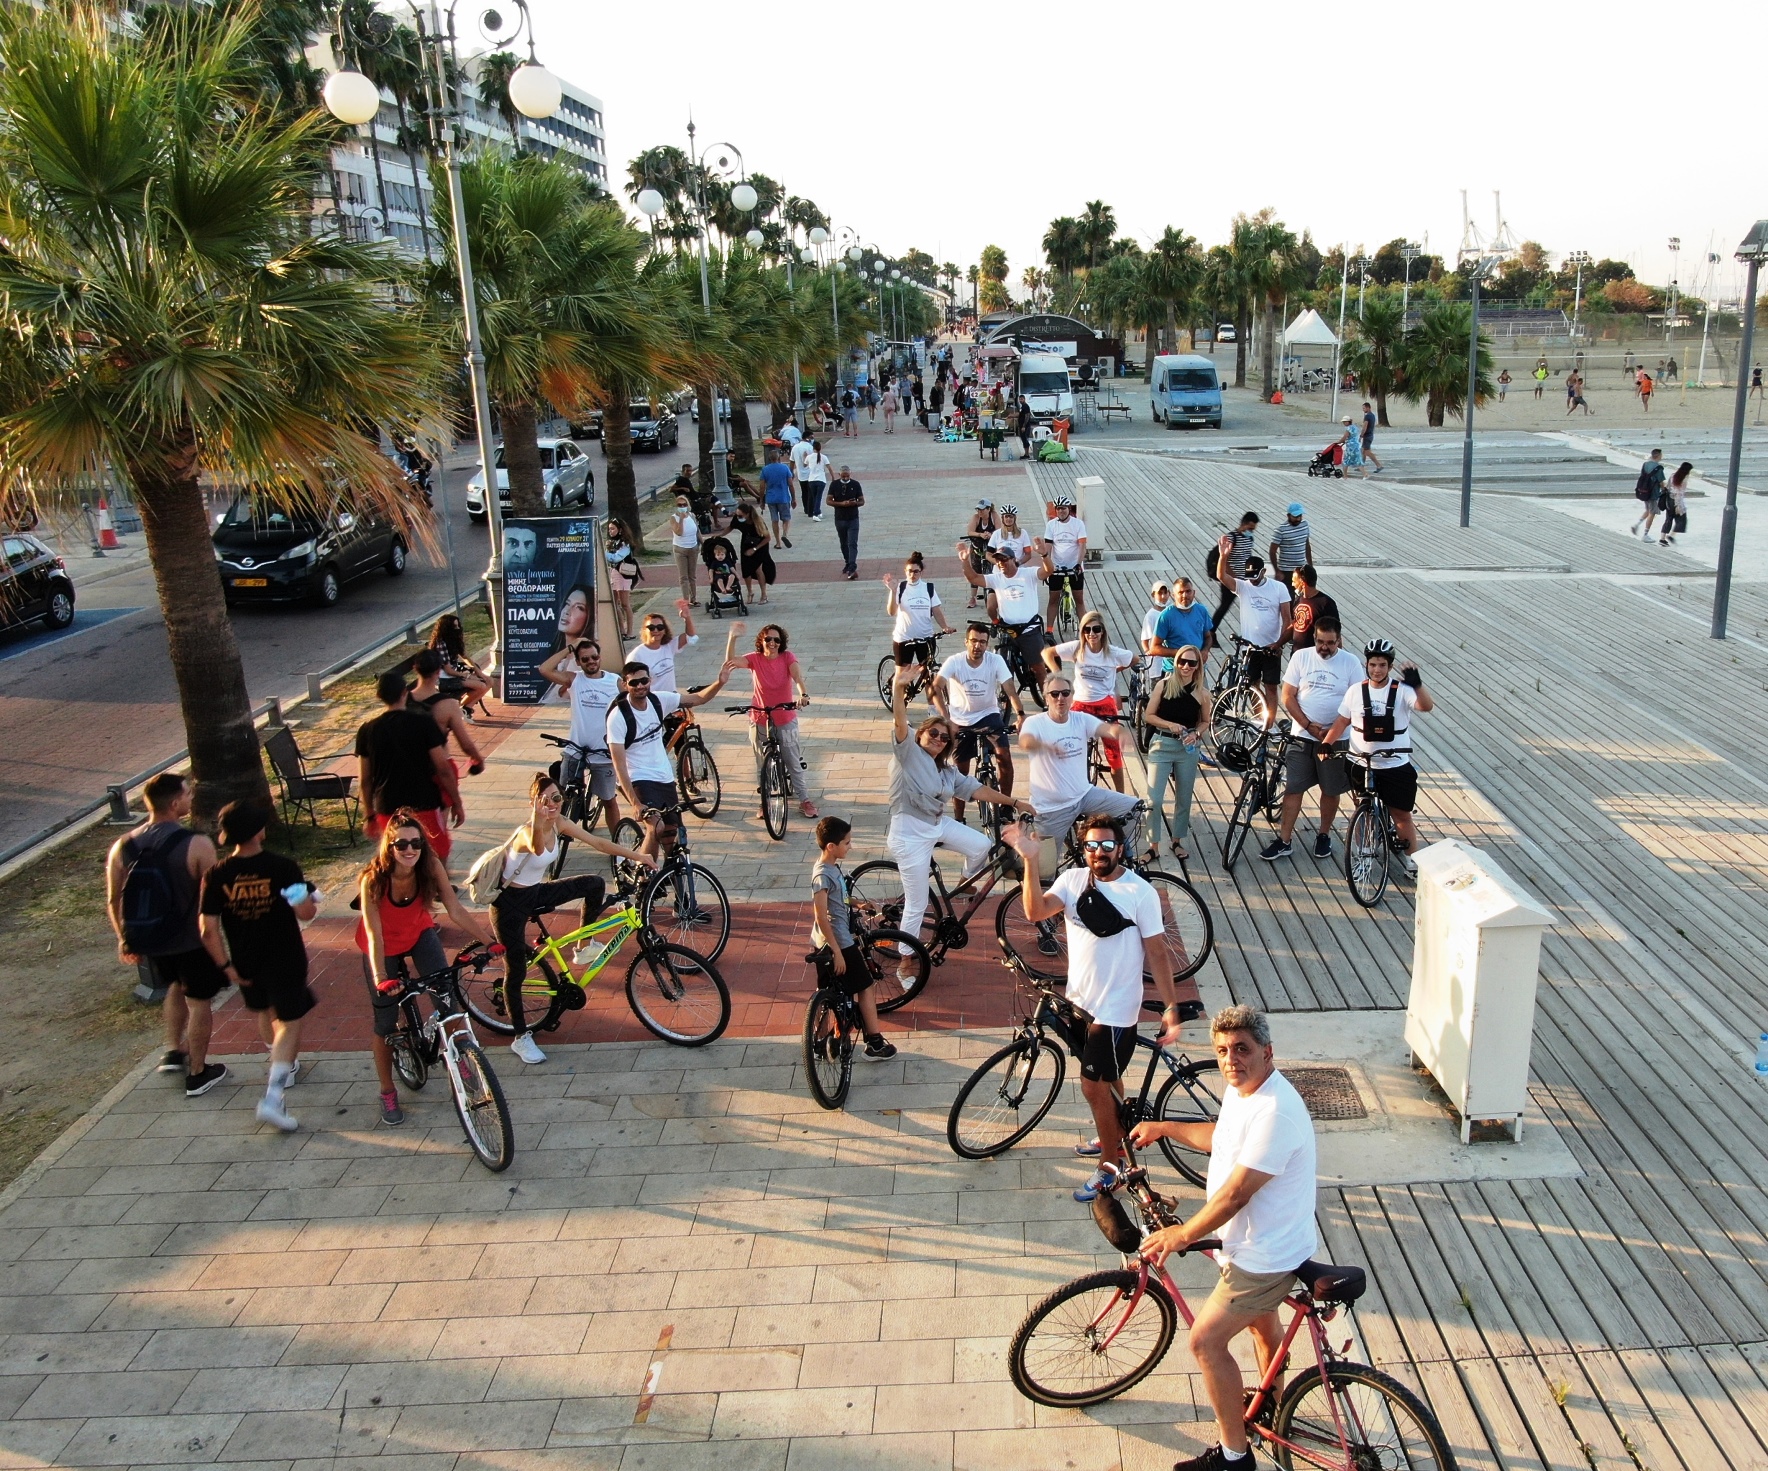 Με επιτυχία ο ποδηλατικός γύρος στο κέντρο της Λάρνακας (Φώτο)